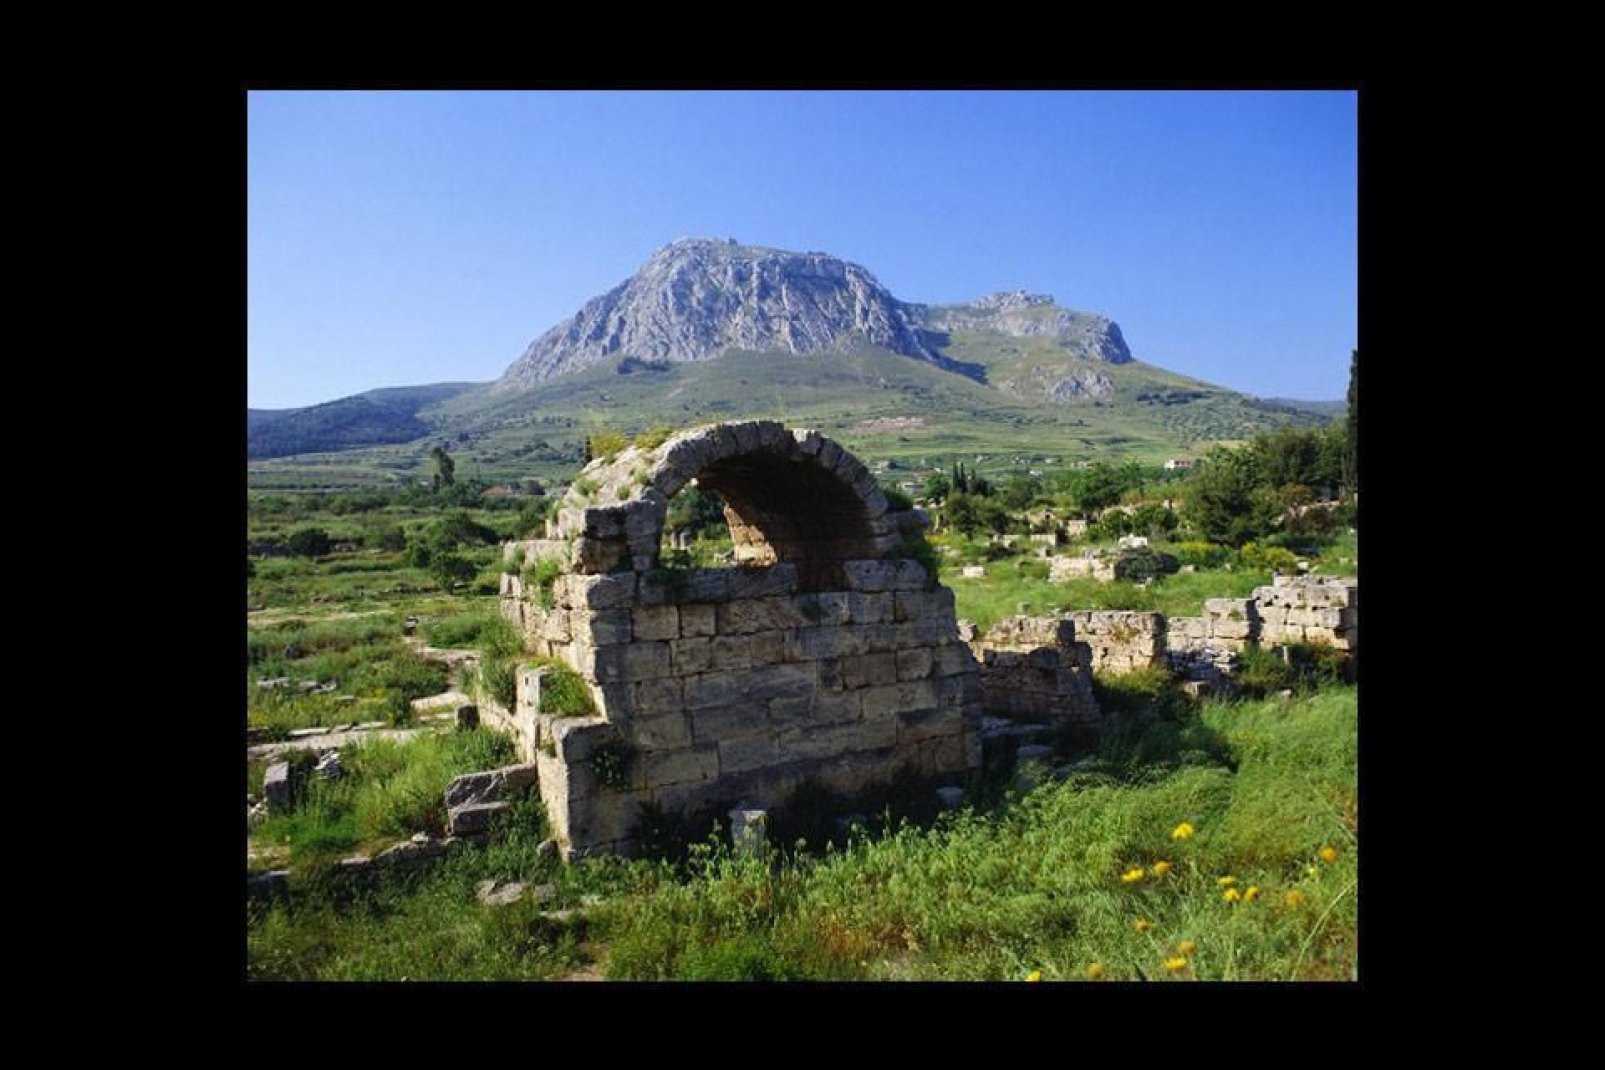 Corinto possiede diverse stratificazioni di reperti archeologici risalenti ad epoche diverse